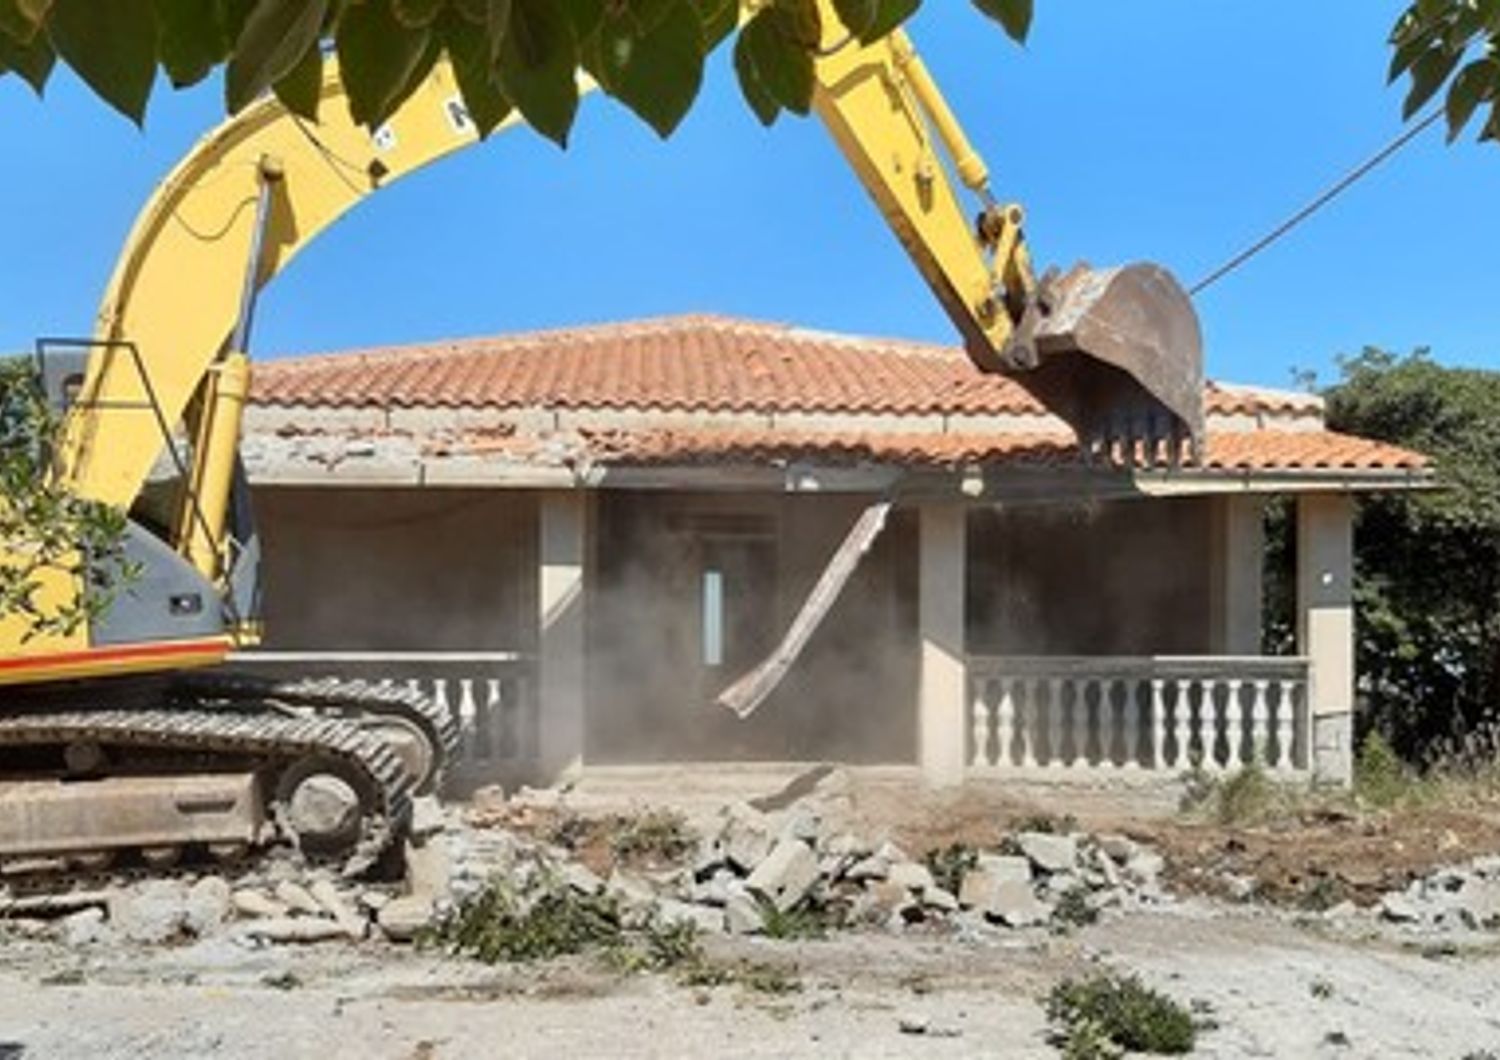 &nbsp;Lavori per la demolizione di una villa abusiva a Crotone